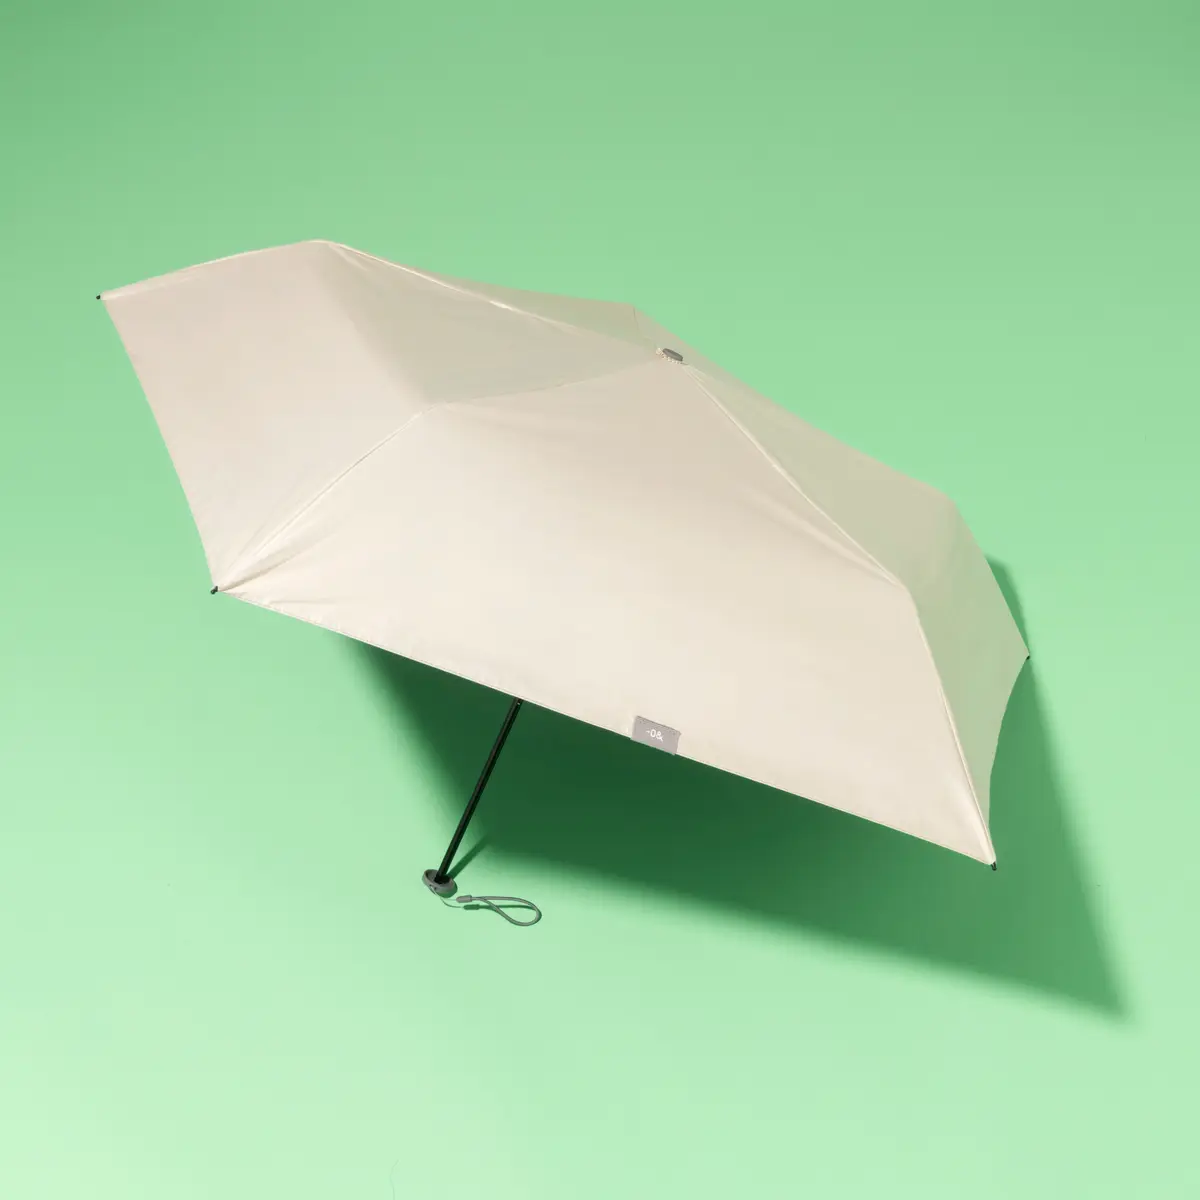 スパイスオブライフの日傘の製品画像